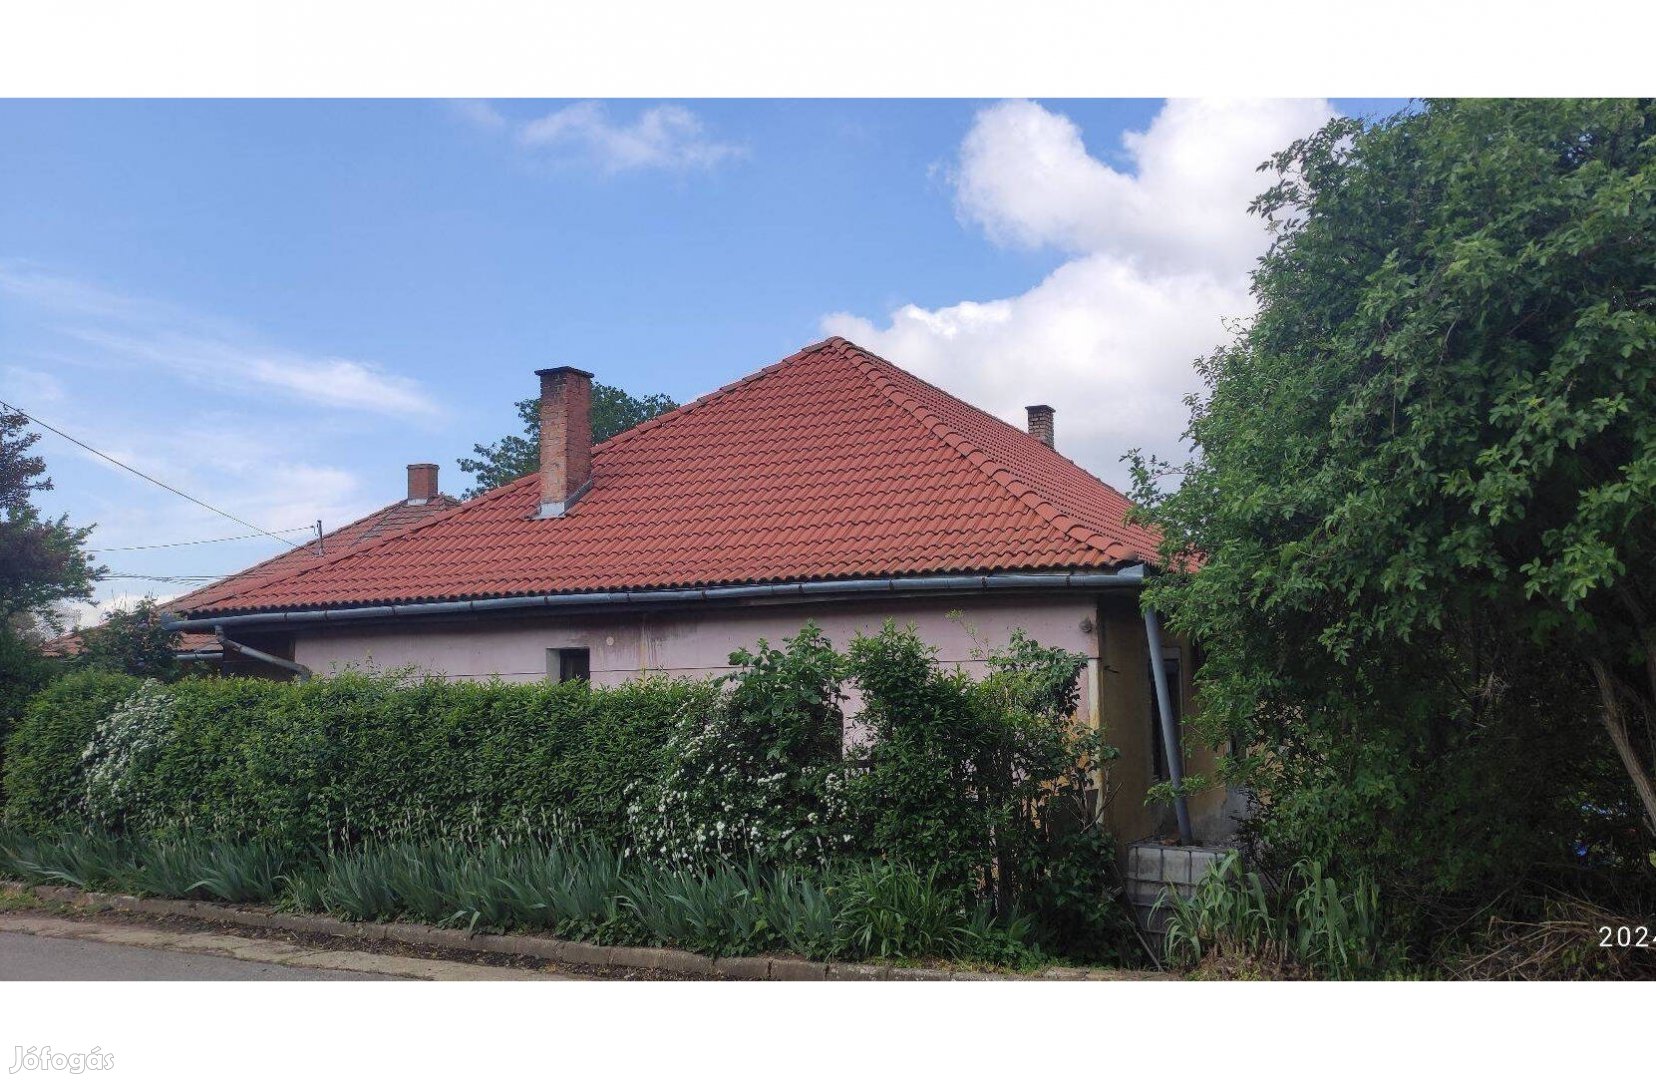 Gyönyörű amerikai konyhás családi ház garázzsal fészerrel Pécs városba